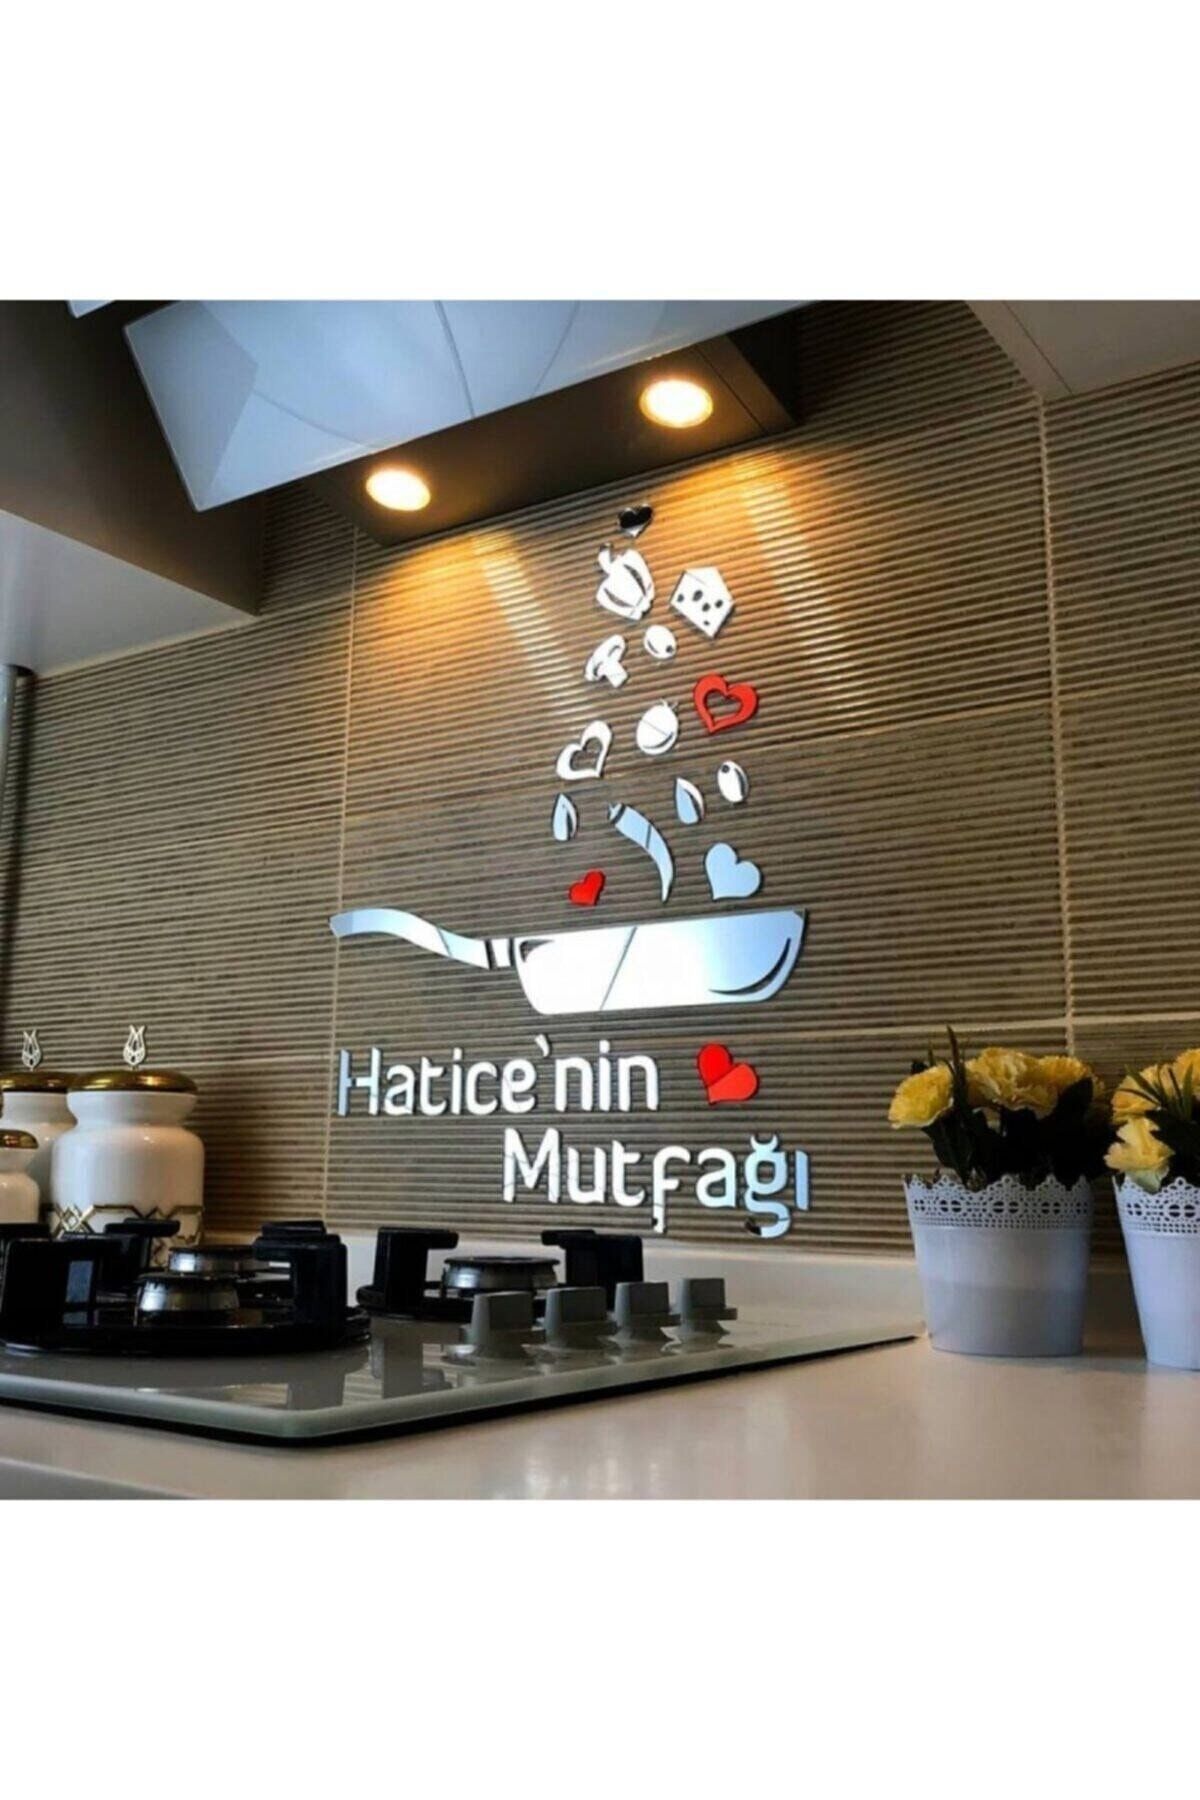 Kurtulan Lazer Tasarım Aynalı Pleksili Duvar Dekorasyon Gümüş Tava Mutfak  Süsü Fiyatı, Yorumları - Trendyol